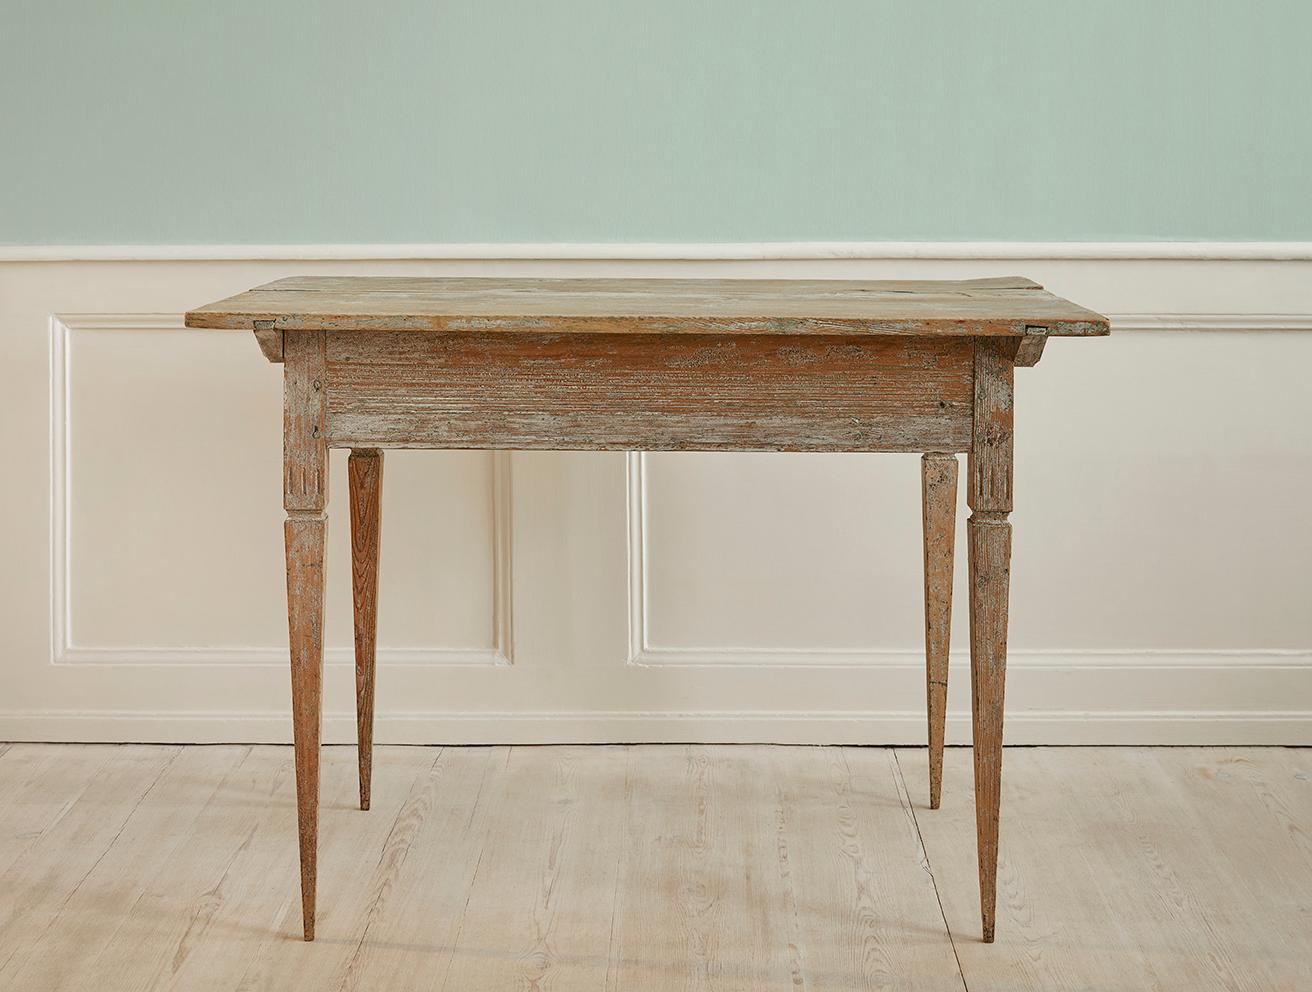 Suède, fin du 18e siècle.

Table en pin gustavien avec des tons de blanc et de vert.

Mesures : H 76 x L 108 x P 69 cm.